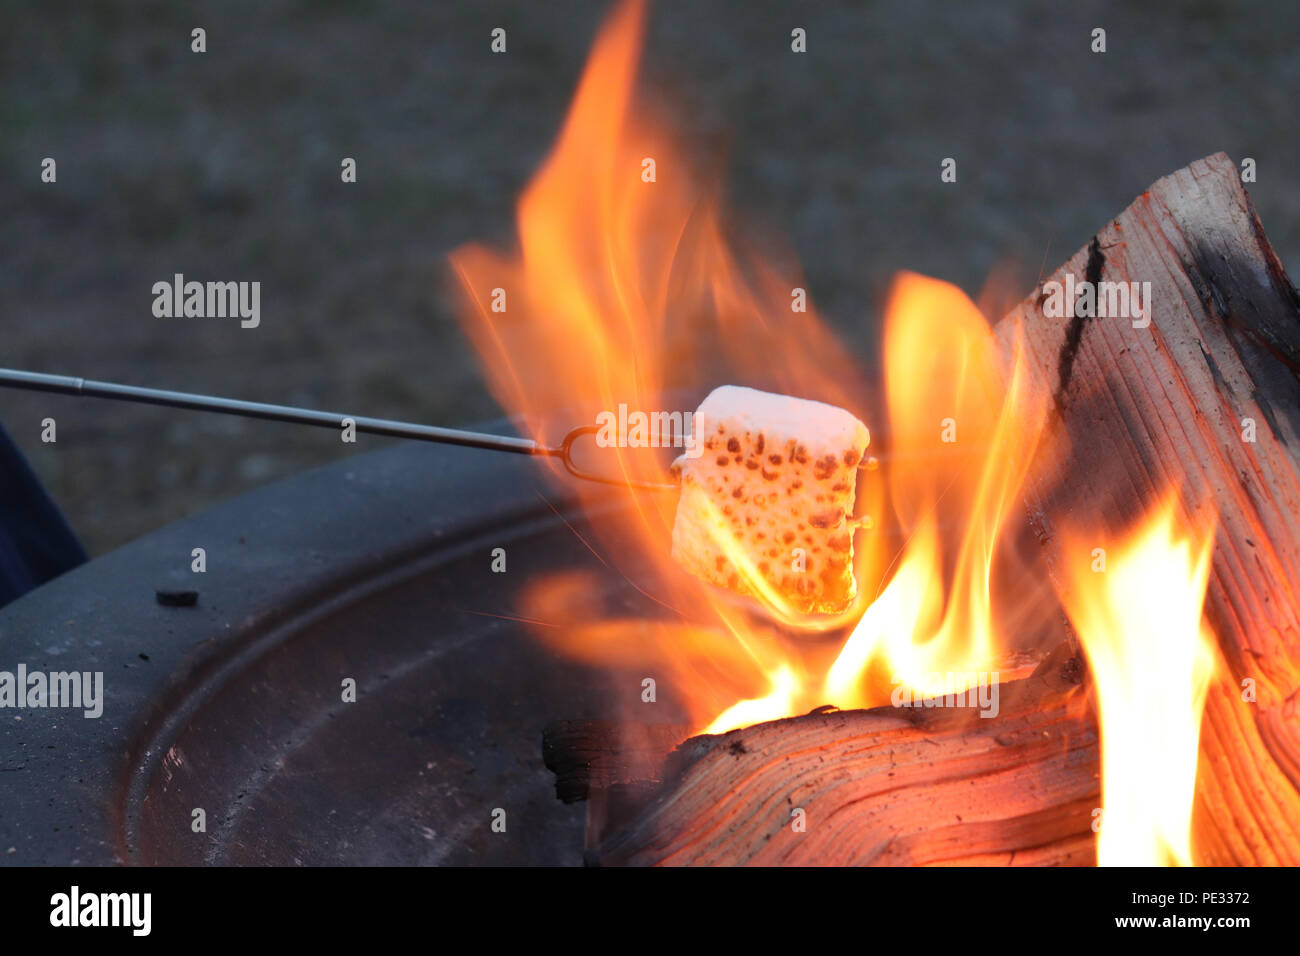 Incendio in una buca per il fuoco, tostatura marshmallow Foto Stock